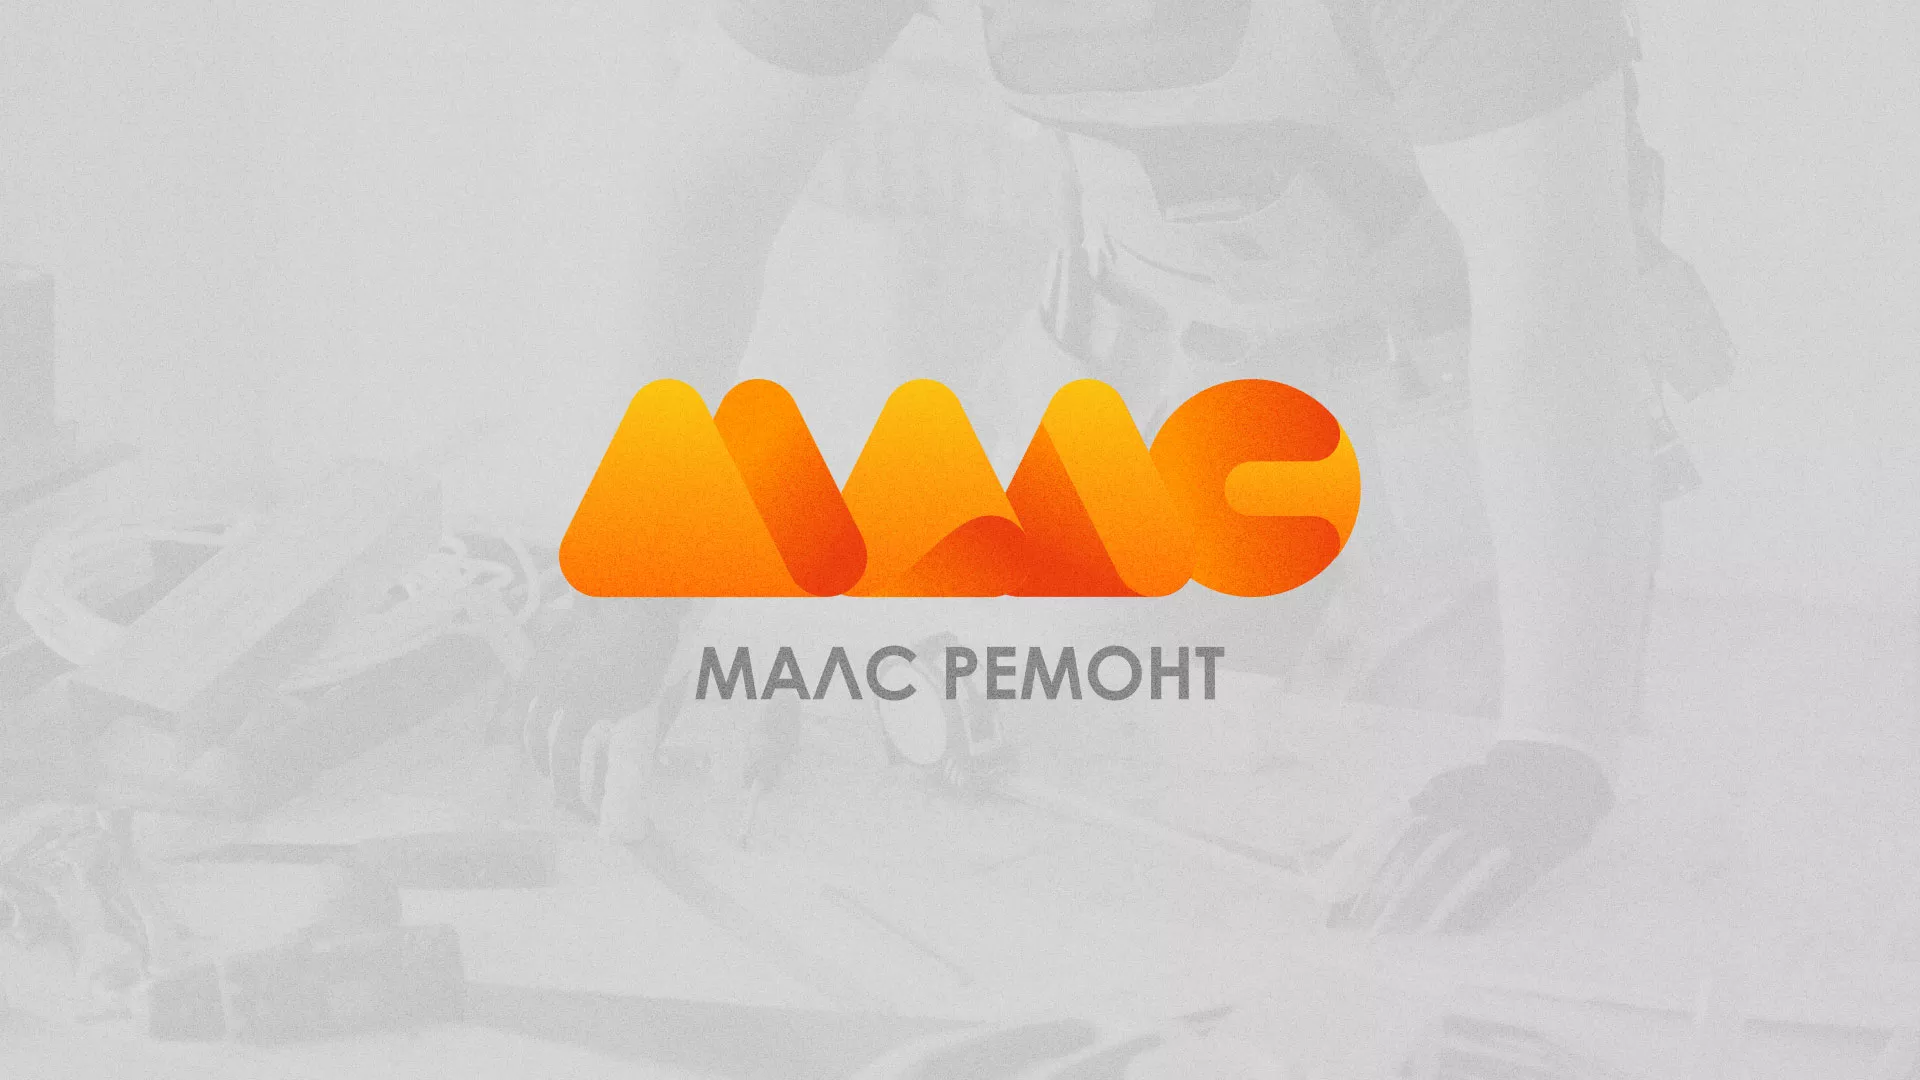 Создание логотипа для компании «МАЛС РЕМОНТ» в Харабалях